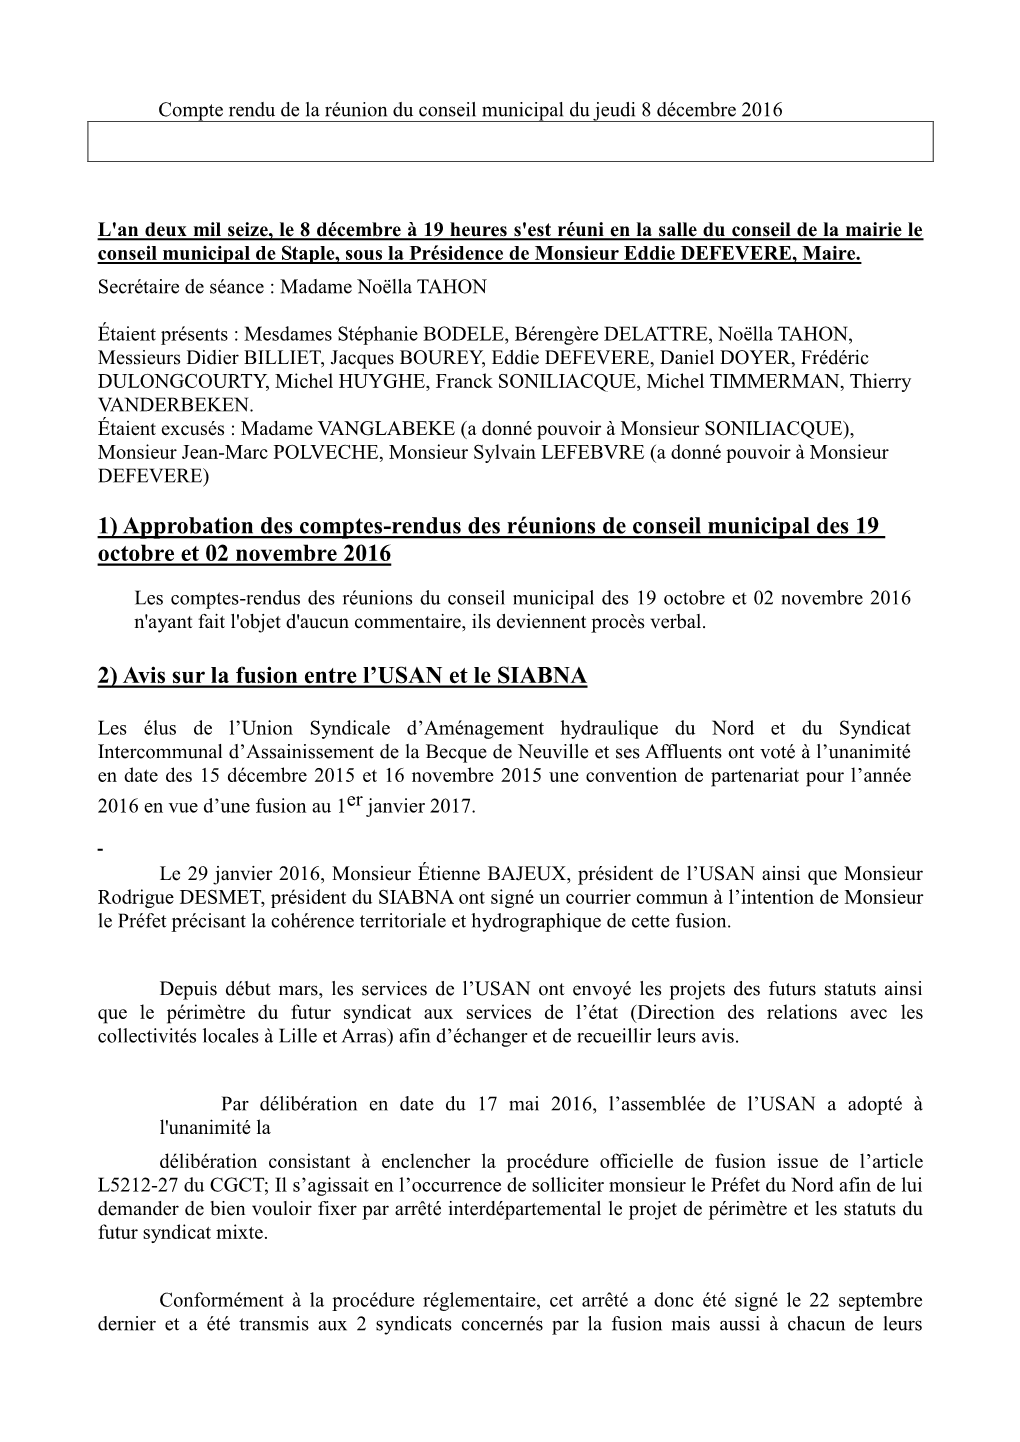 1) Approbation Des Comptes-Rendus Des Réunions De Conseil Municipal Des 19 Octobre Et 02 Novembre 2016